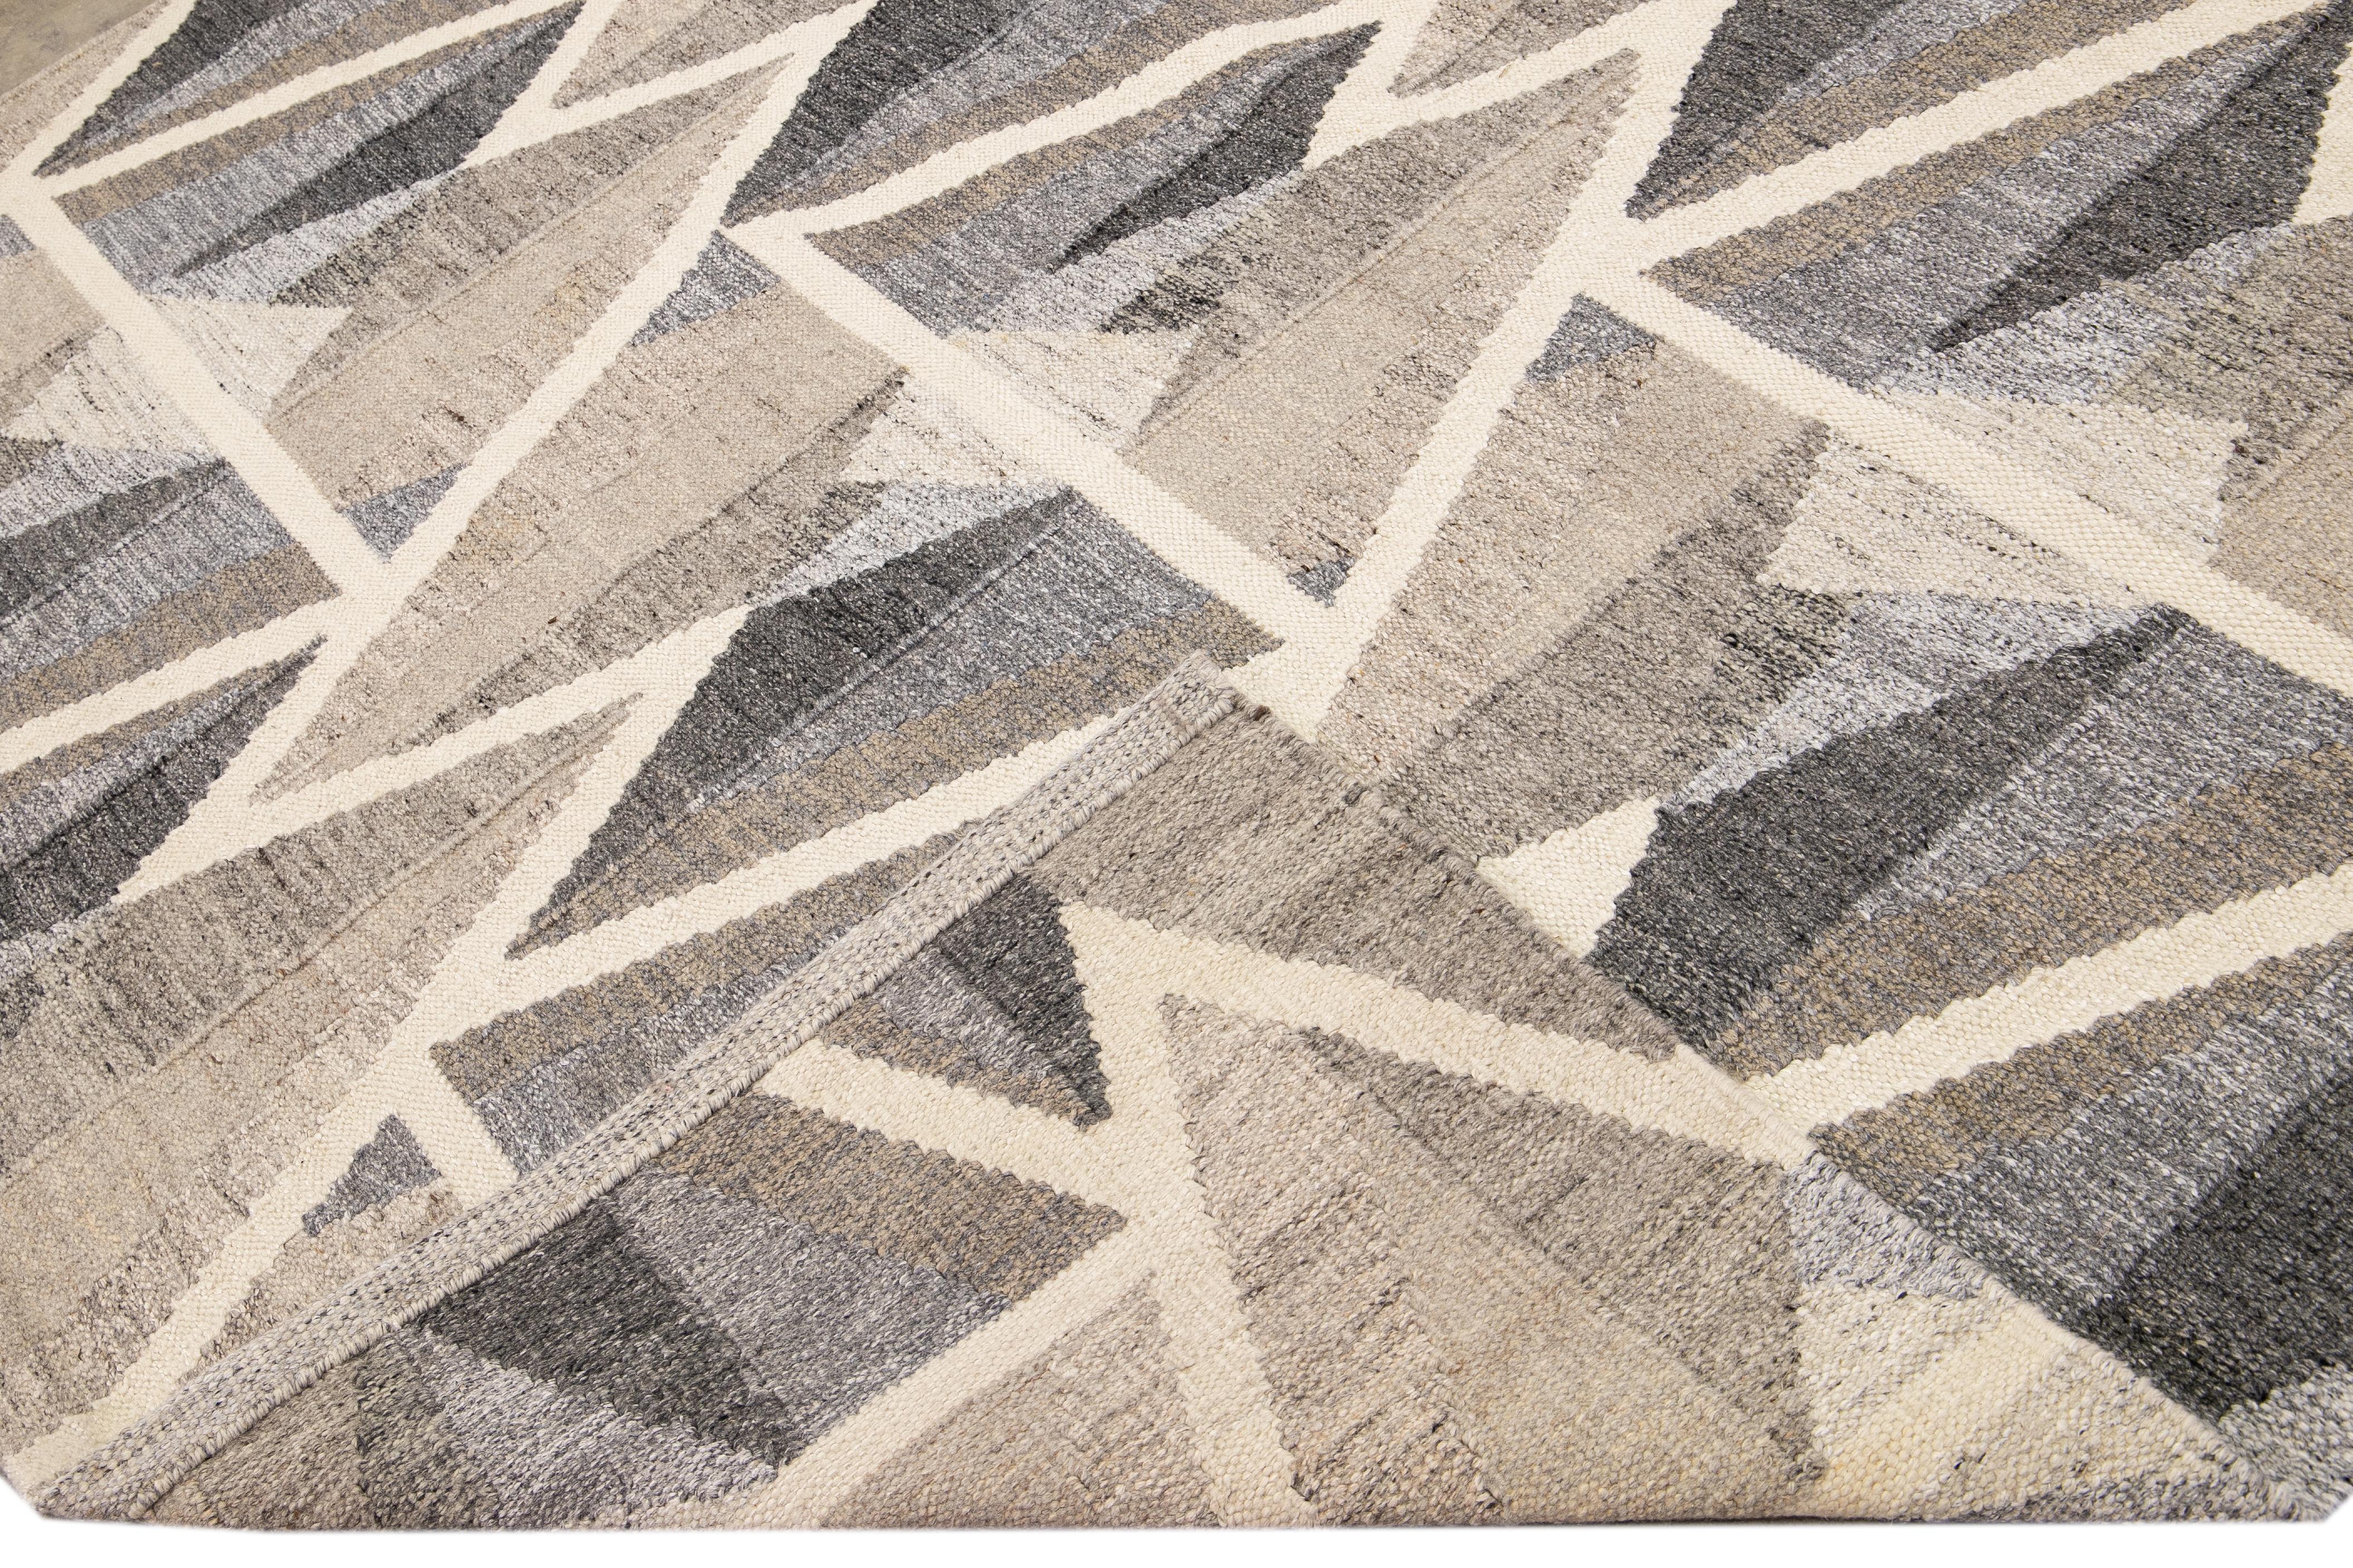 Magnifique tapis moderne en laine à tissage plat de style suédois. Ce tapis Kilim plein d'art présente un champ marron, beige et gris dans un magnifique design géométrique abstrait.

Ce tapis mesure : 9'2